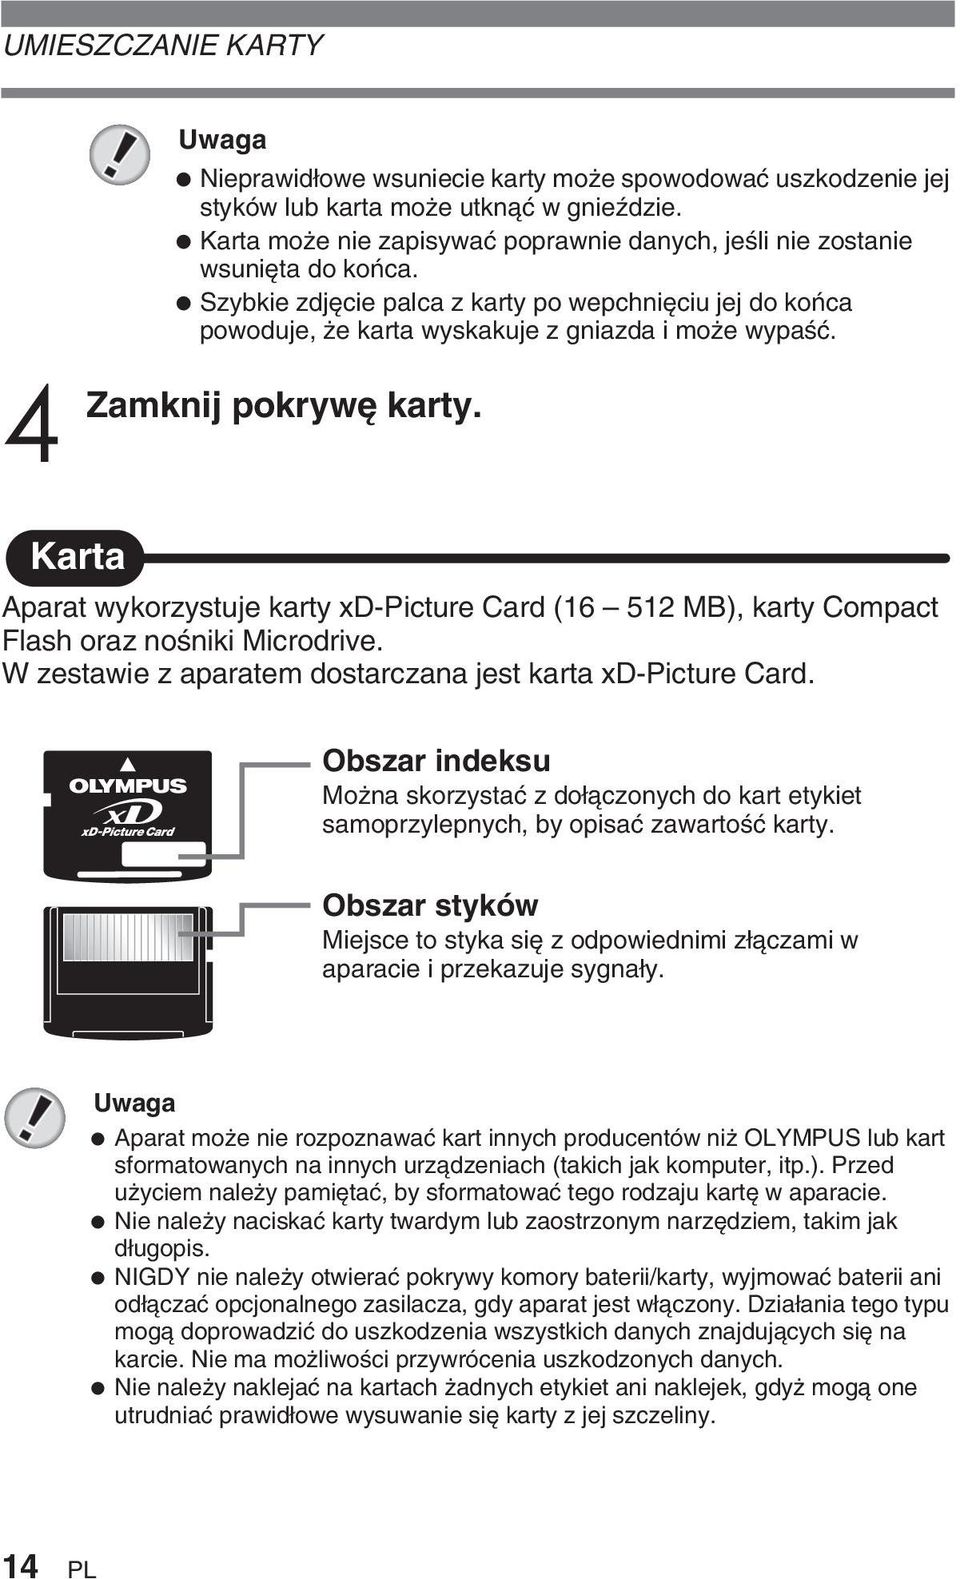 pokryw karty. Karta Aparat wykorzystuje karty xd-picture Card (16 512 MB), karty Compact Flash oraz noêniki Microdrive. W zestawie z aparatem dostarczana jest karta xd-picture Card.